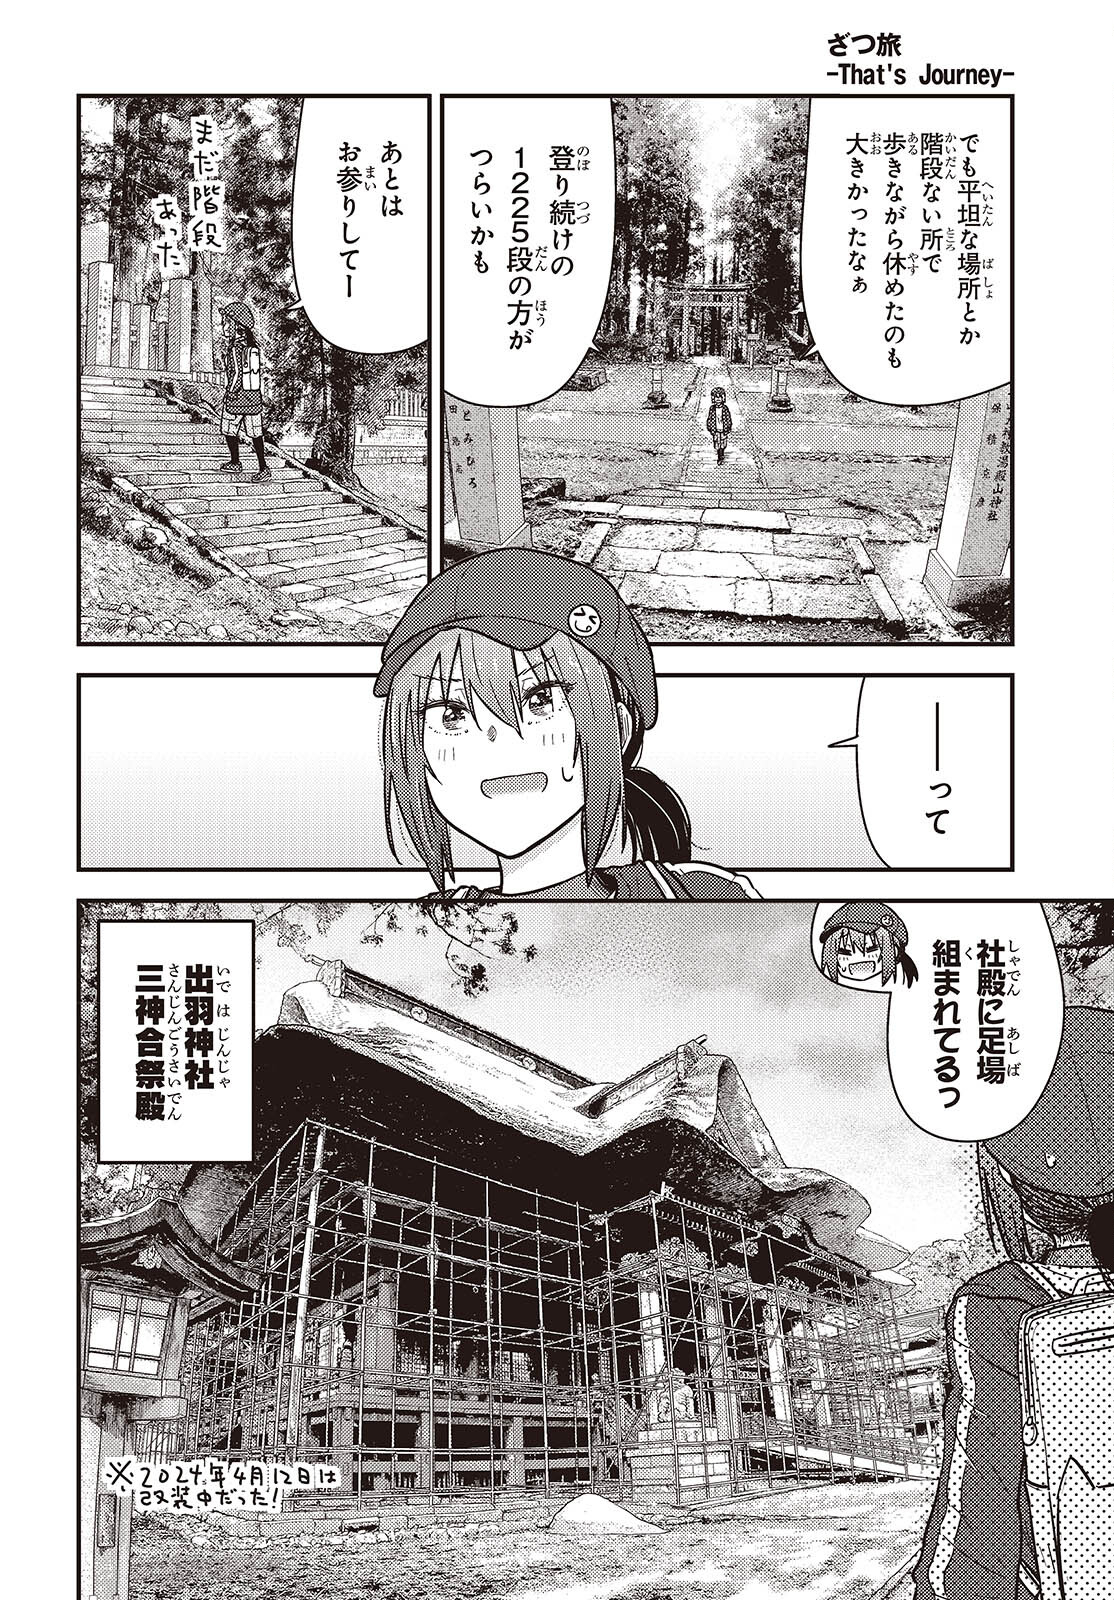 ざつ旅-That's Journey- 第38話 - Page 20